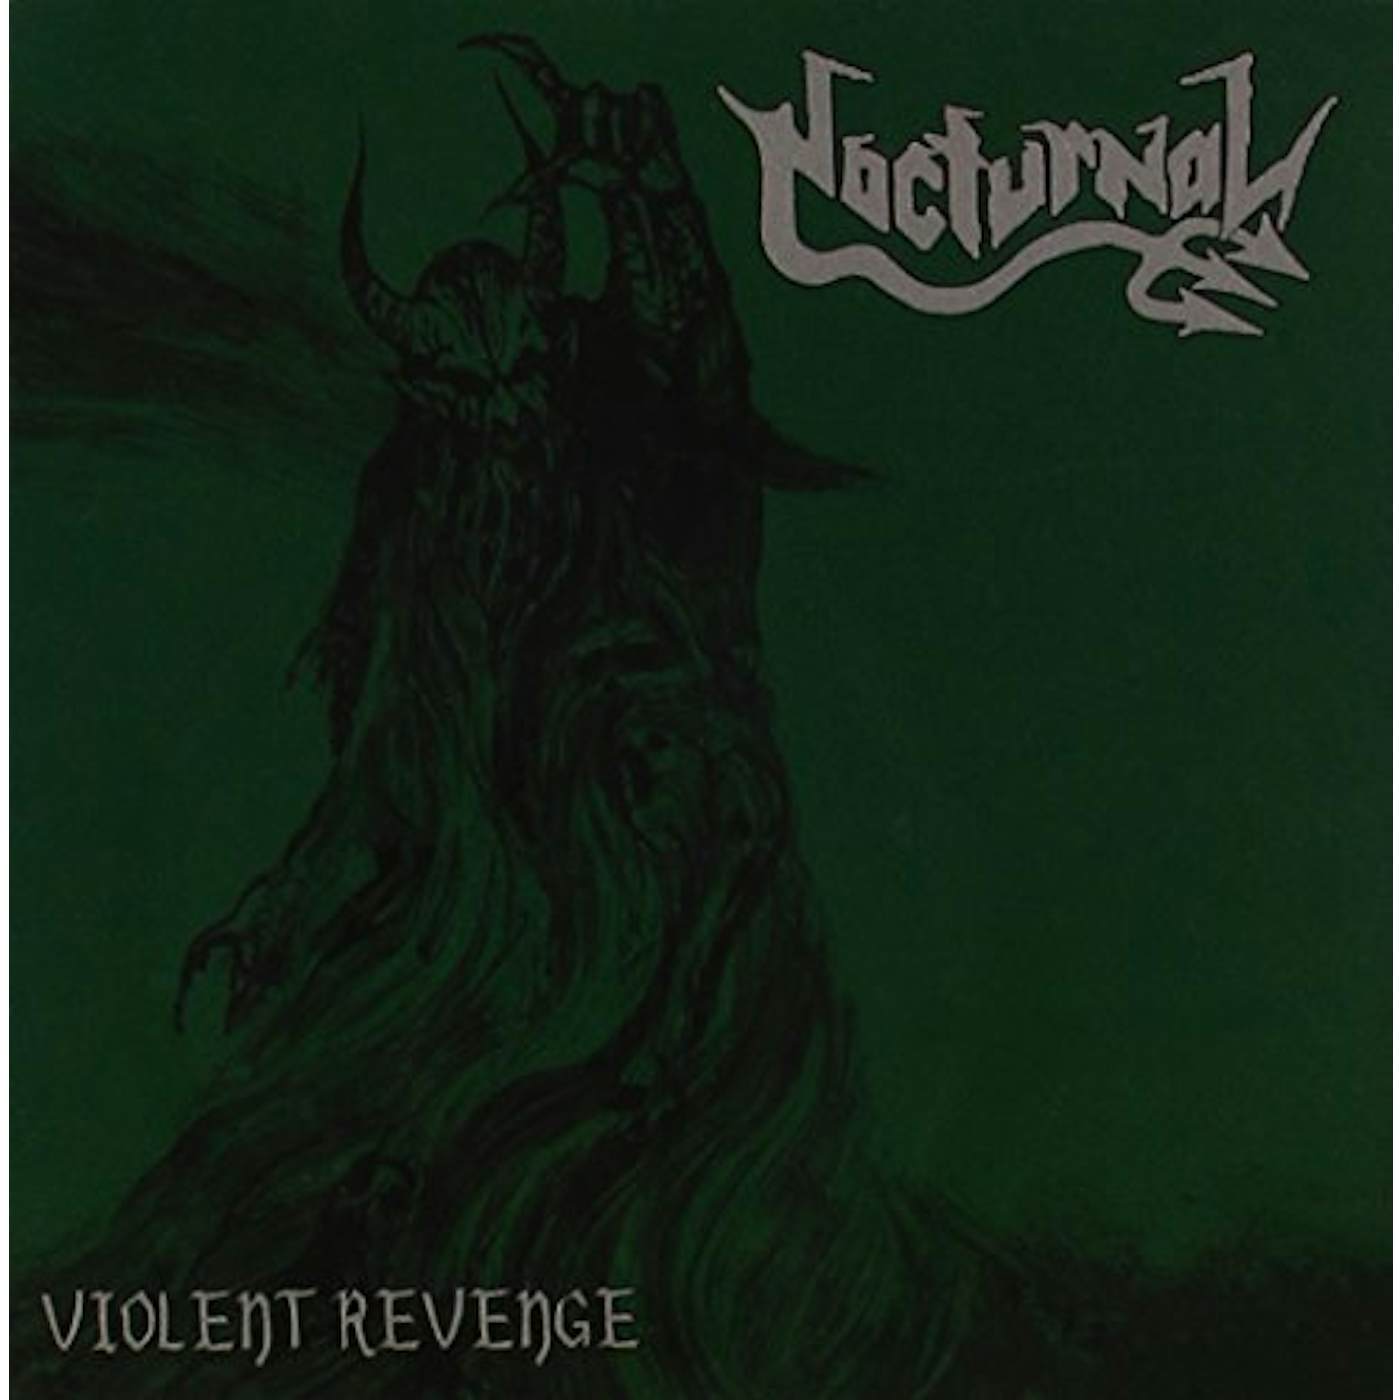 Nocturnal VIOLENT REVENGE CD